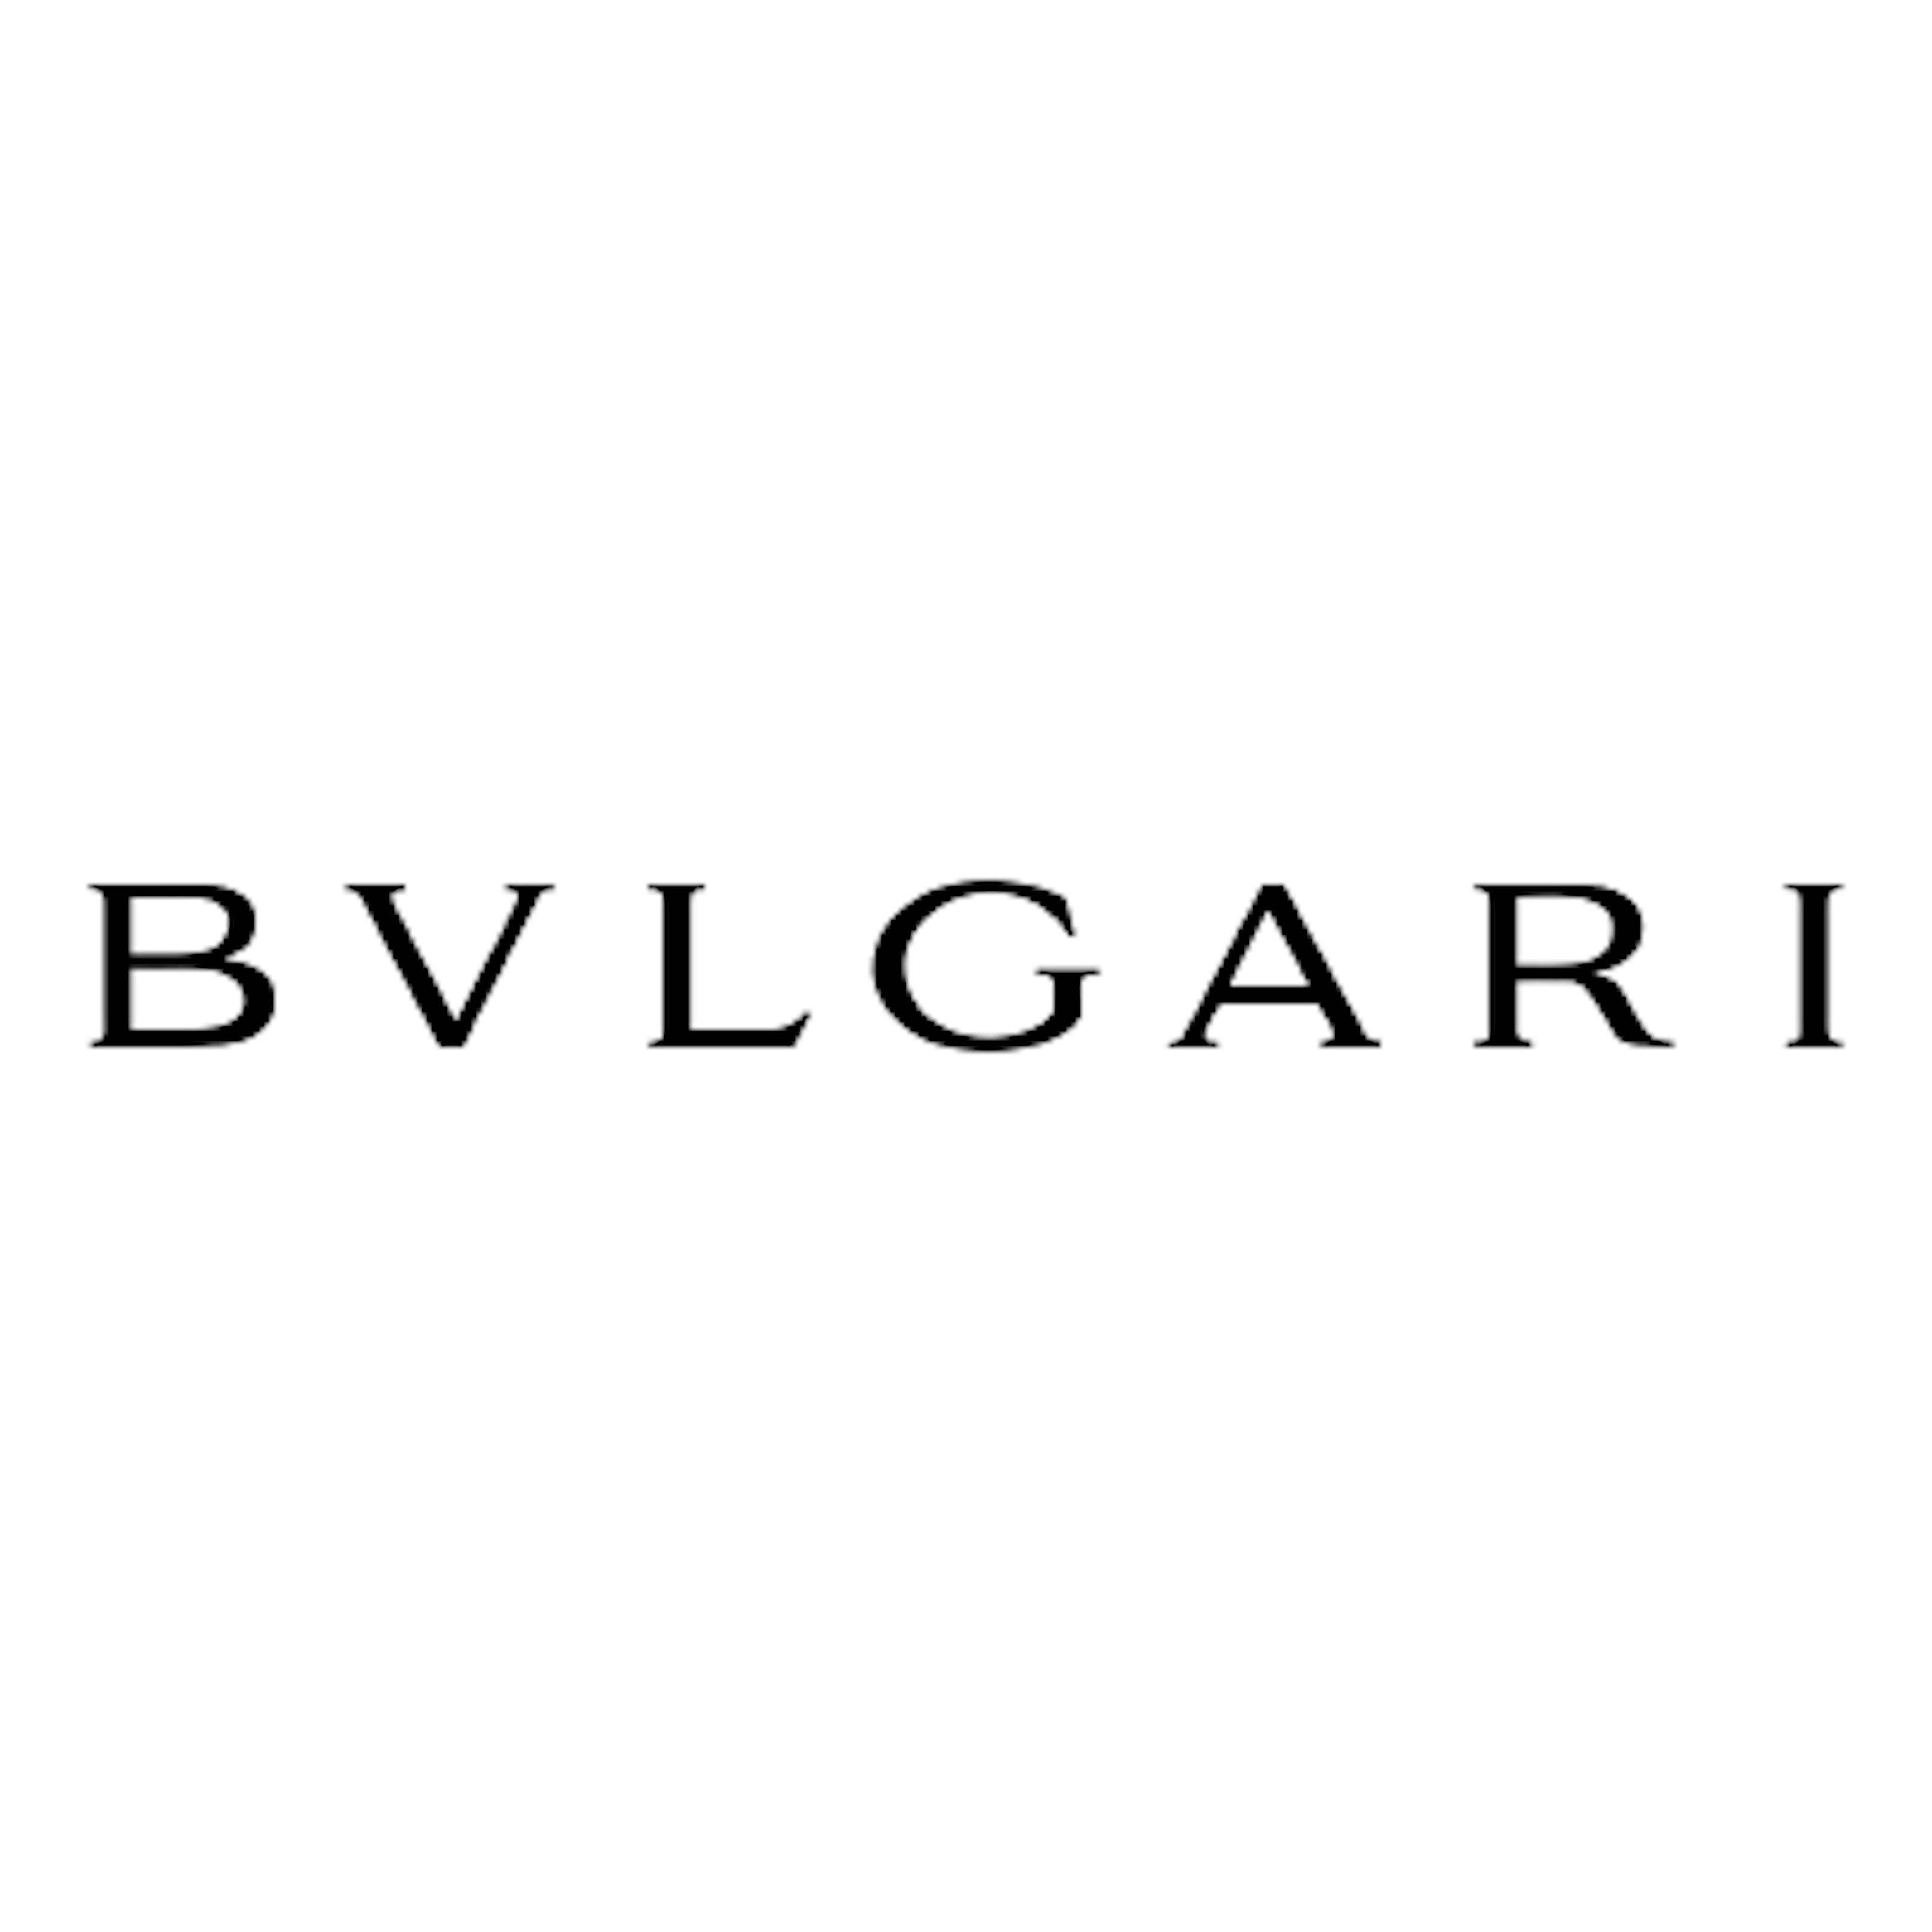 logo Bvlgari